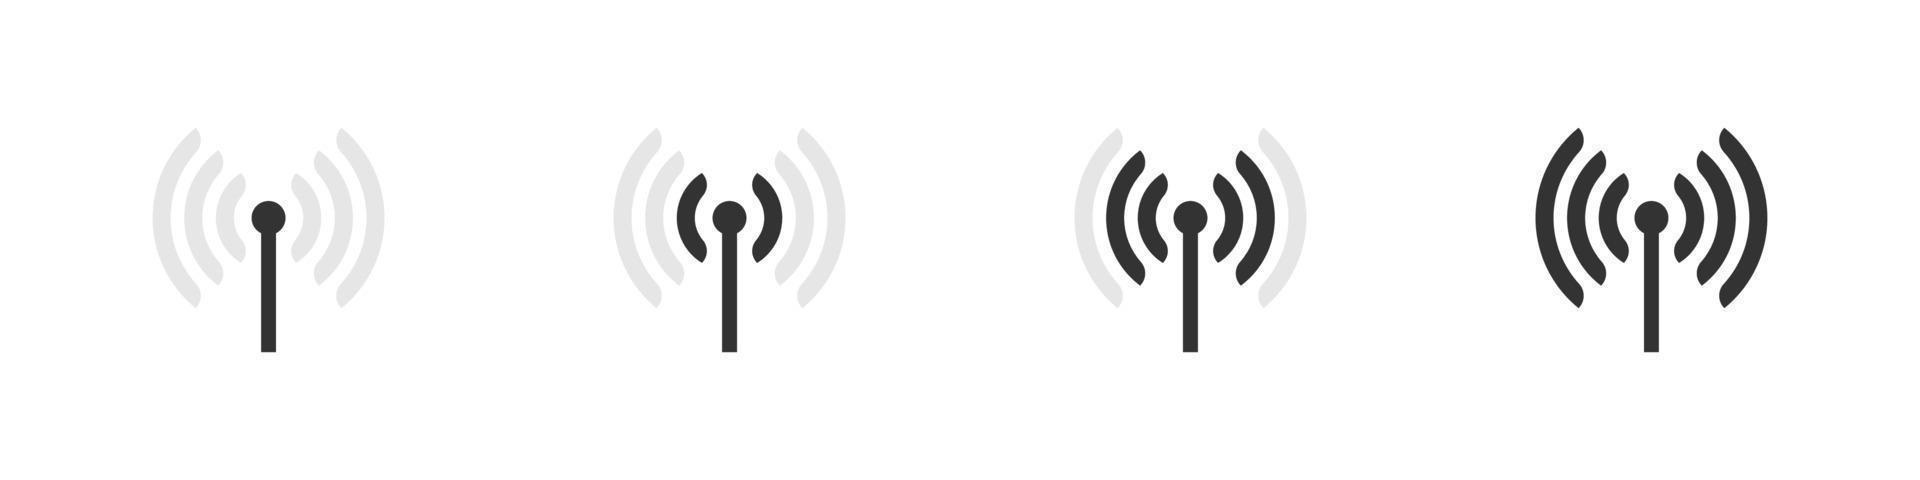 antena wifi. conceito de ícones wi-fi. sinal de internet sem fio isolado no fundo branco. ilustração vetorial vetor